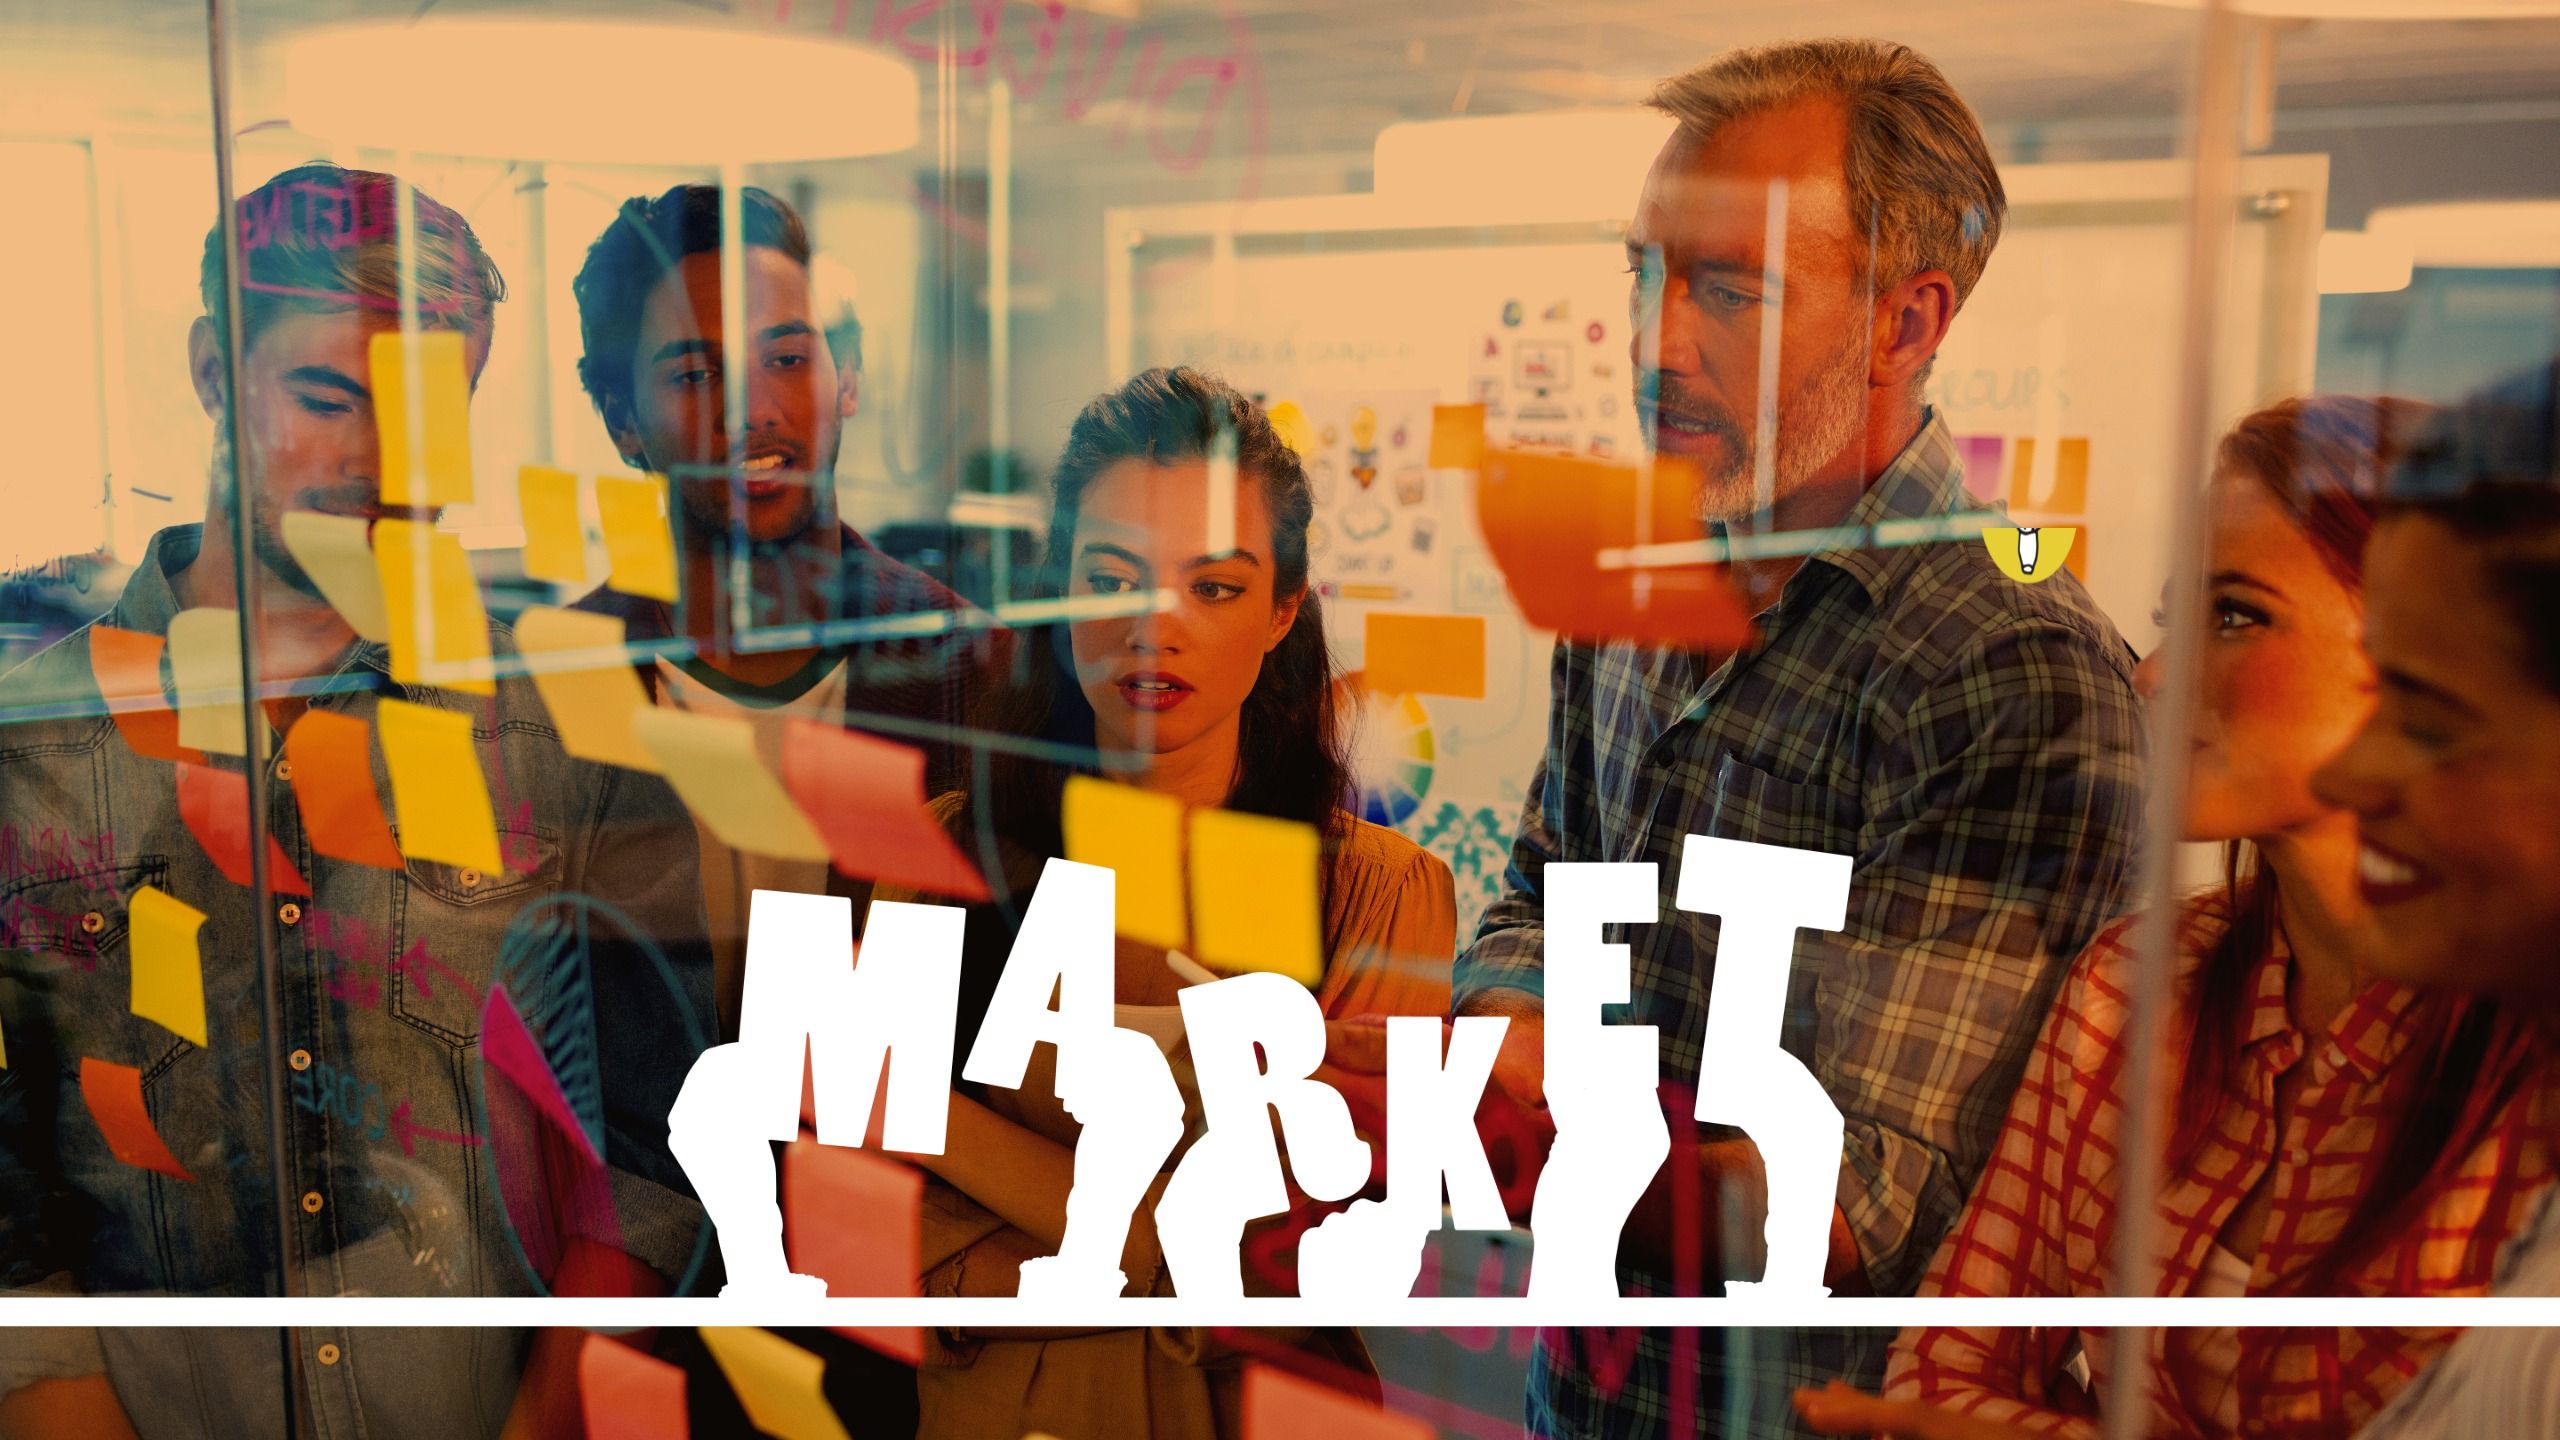 Ilustração da palavra mercado contra um fundo de uma equipe fazendo brainstorming de ideias atrás de uma parede de vidro